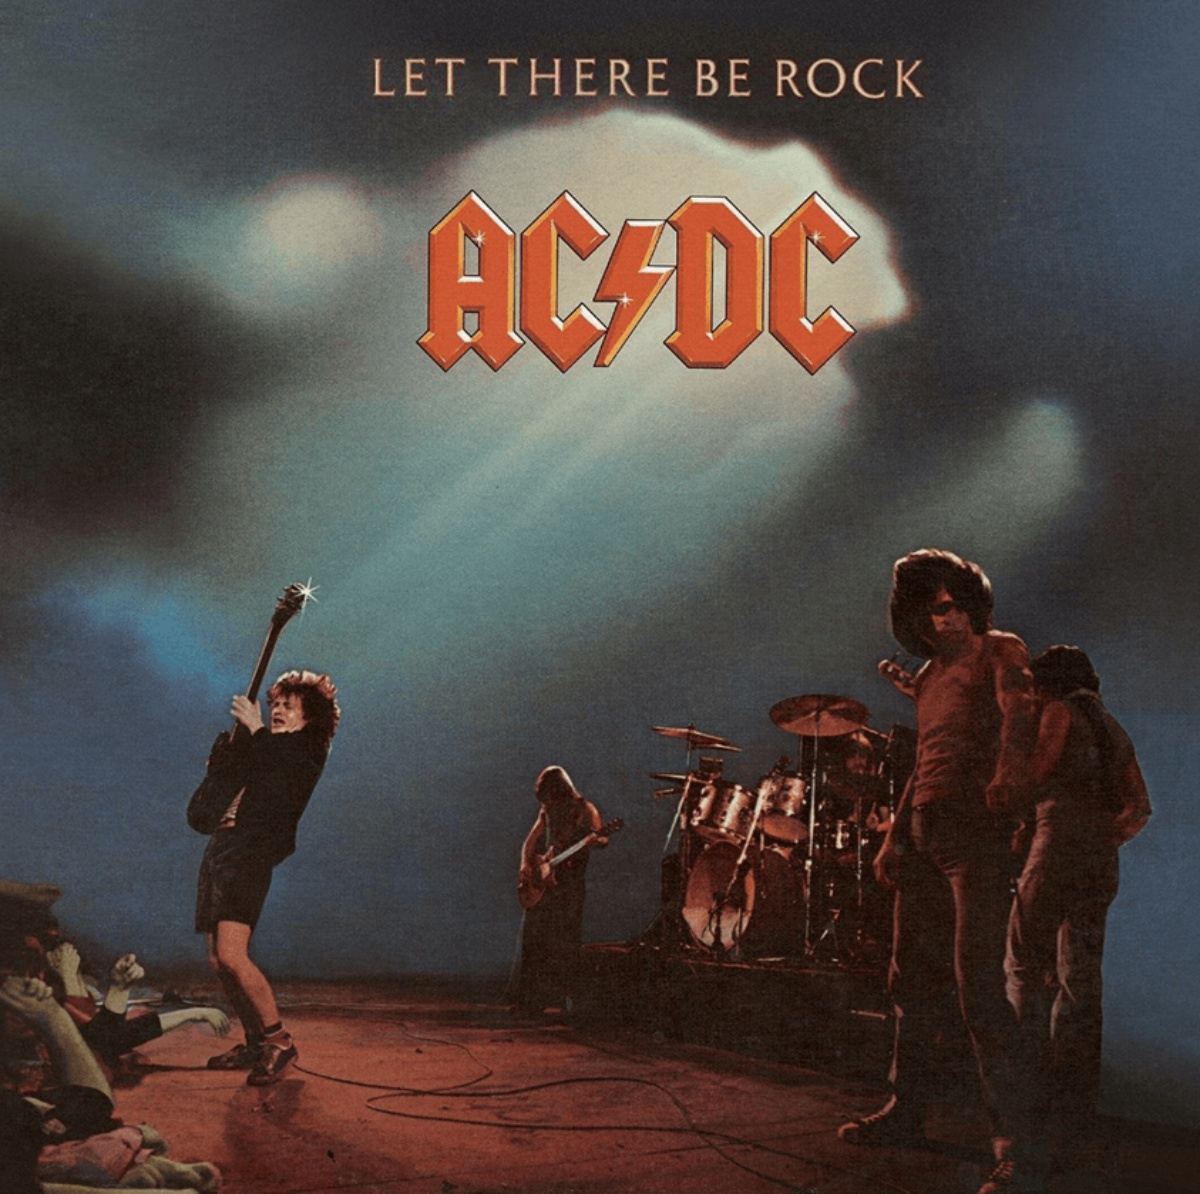 Couverture de l'album "Let There Be Rock" d'AC/DC